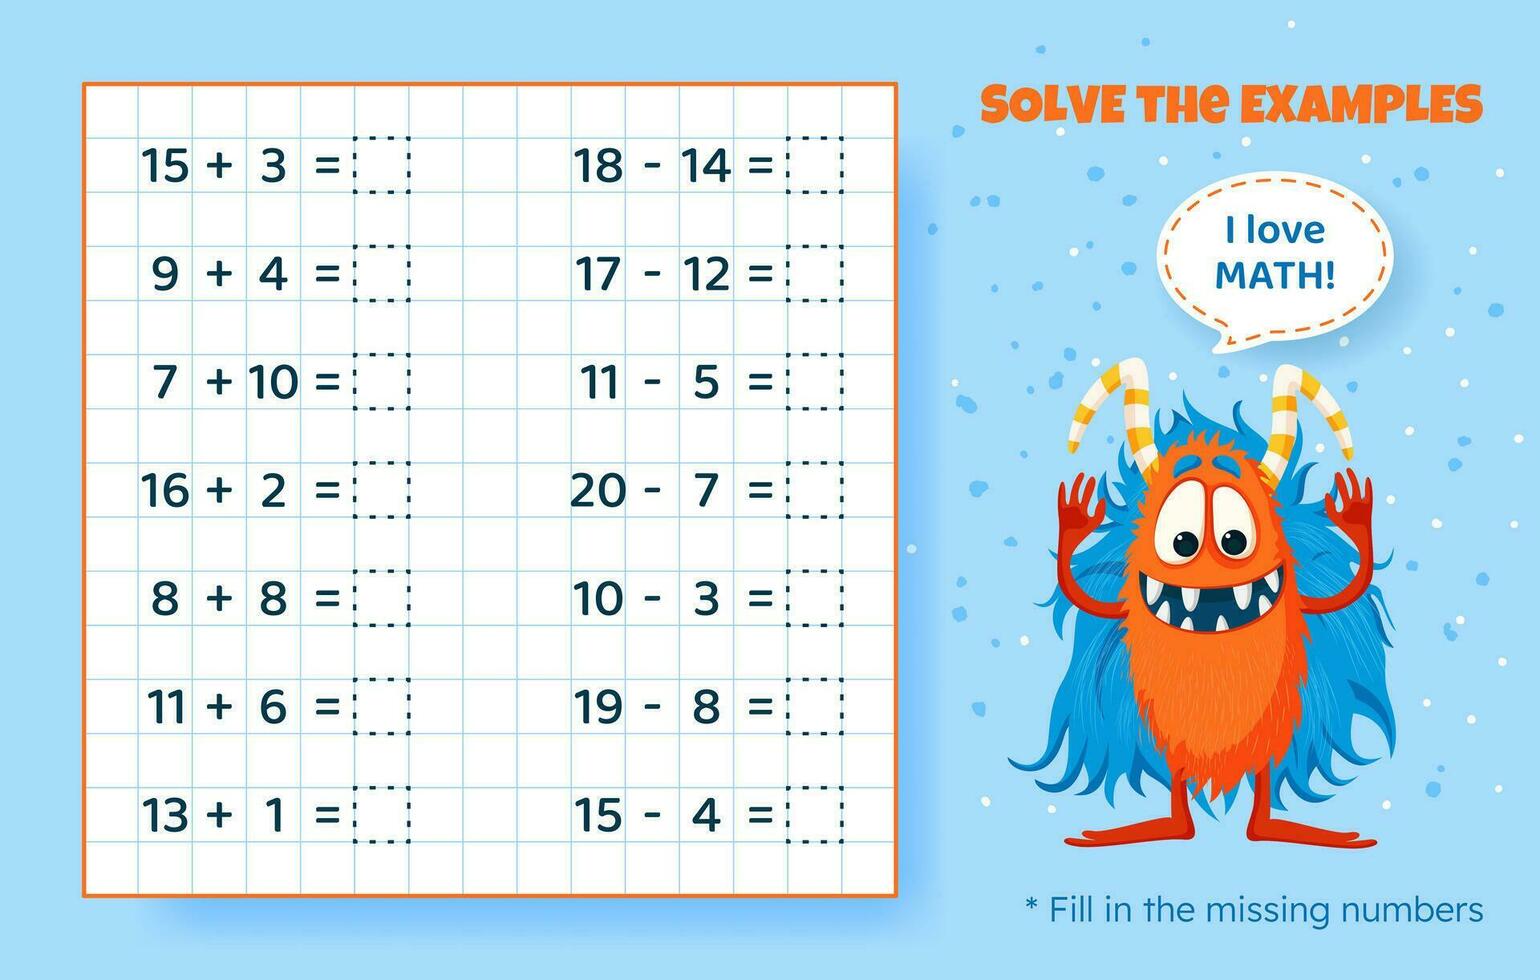 oplossen de voorbeelden. toevoeging en aftrekken omhoog naar 20. wiskundig puzzel spel. werkblad voor peuter- kinderen. vector illustratie. tekenfilm leerzaam spel met schattig monster voor kinderen.